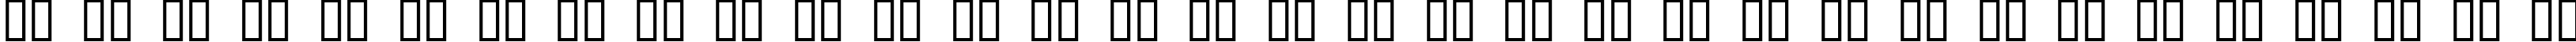 Пример написания русского алфавита шрифтом Dope Jam